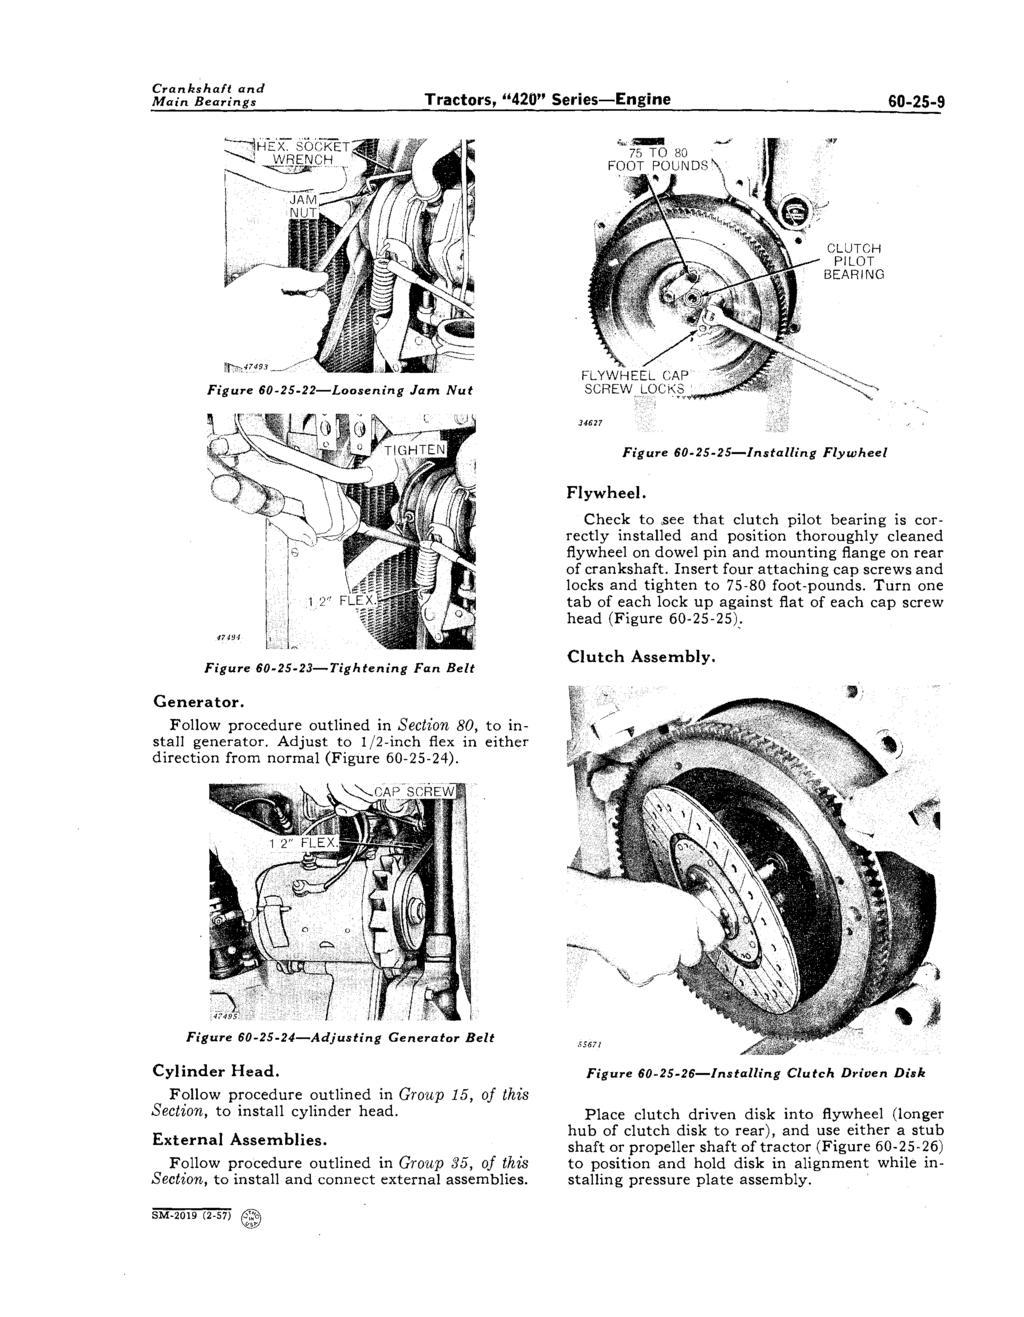 Crankshaft and Main Bearings Tractors, "420" Series-Engine 60-25-9 CLUTCH PILOT BEARING Figure 60-25-22-Loosening Jam Nut Figure 60-2S-25-lnstalling Flywheel Flywheel.